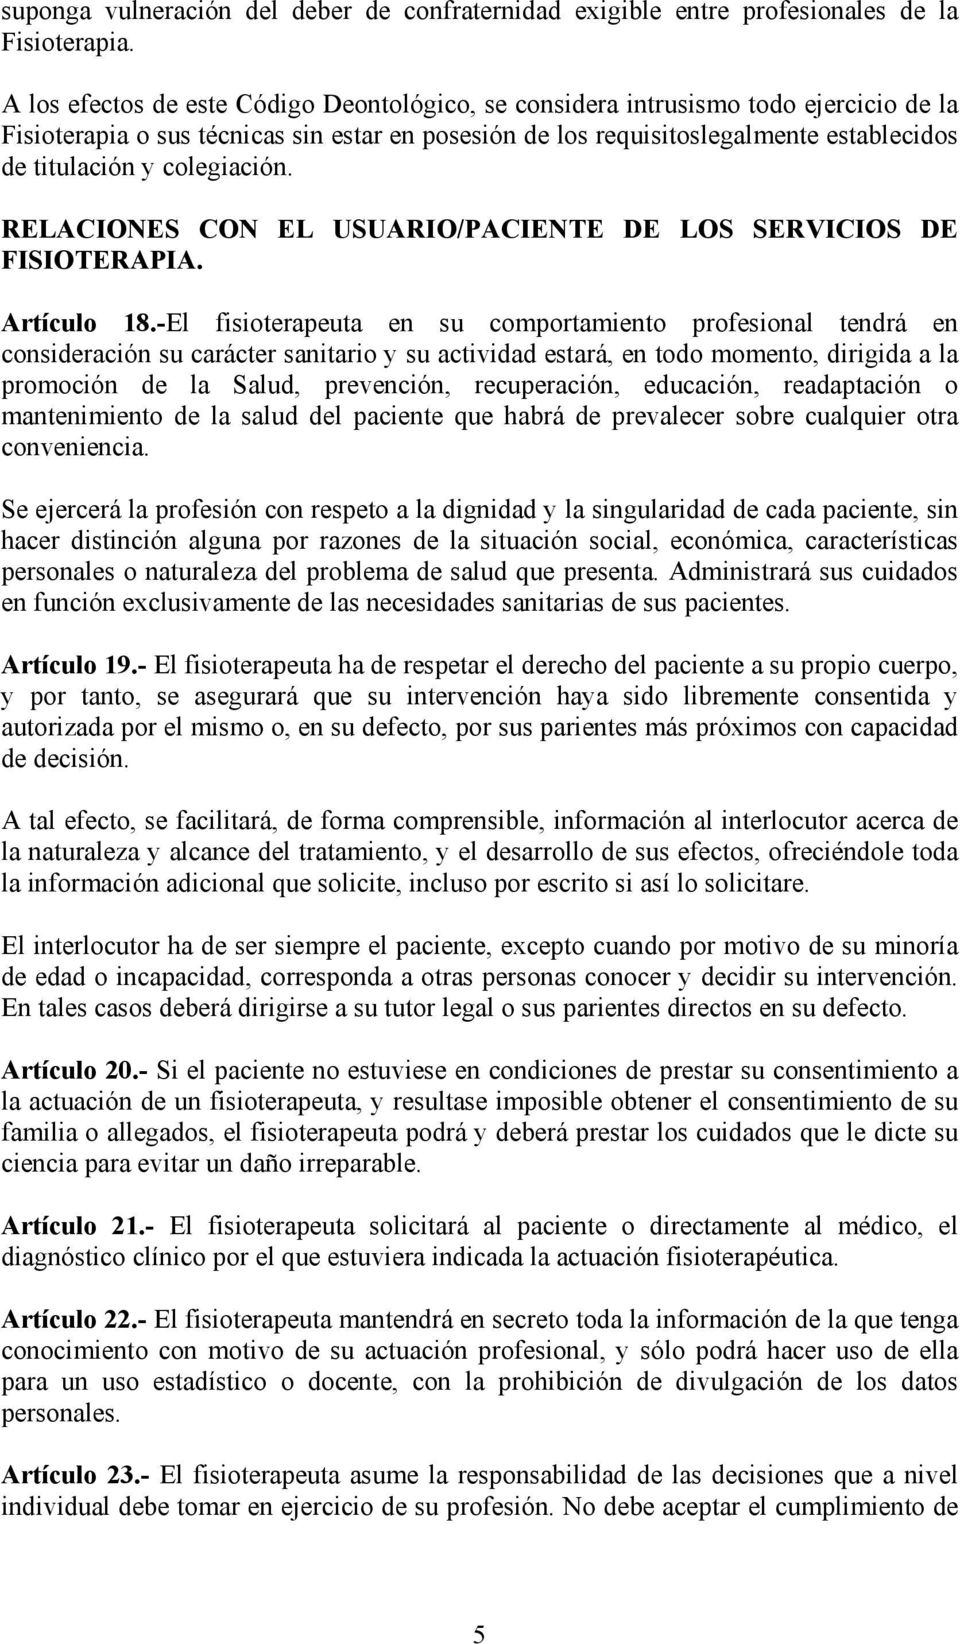 colegiación. RELACIONES CON EL USUARIO/PACIENTE DE LOS SERVICIOS DE FISIOTERAPIA. Artículo 18.